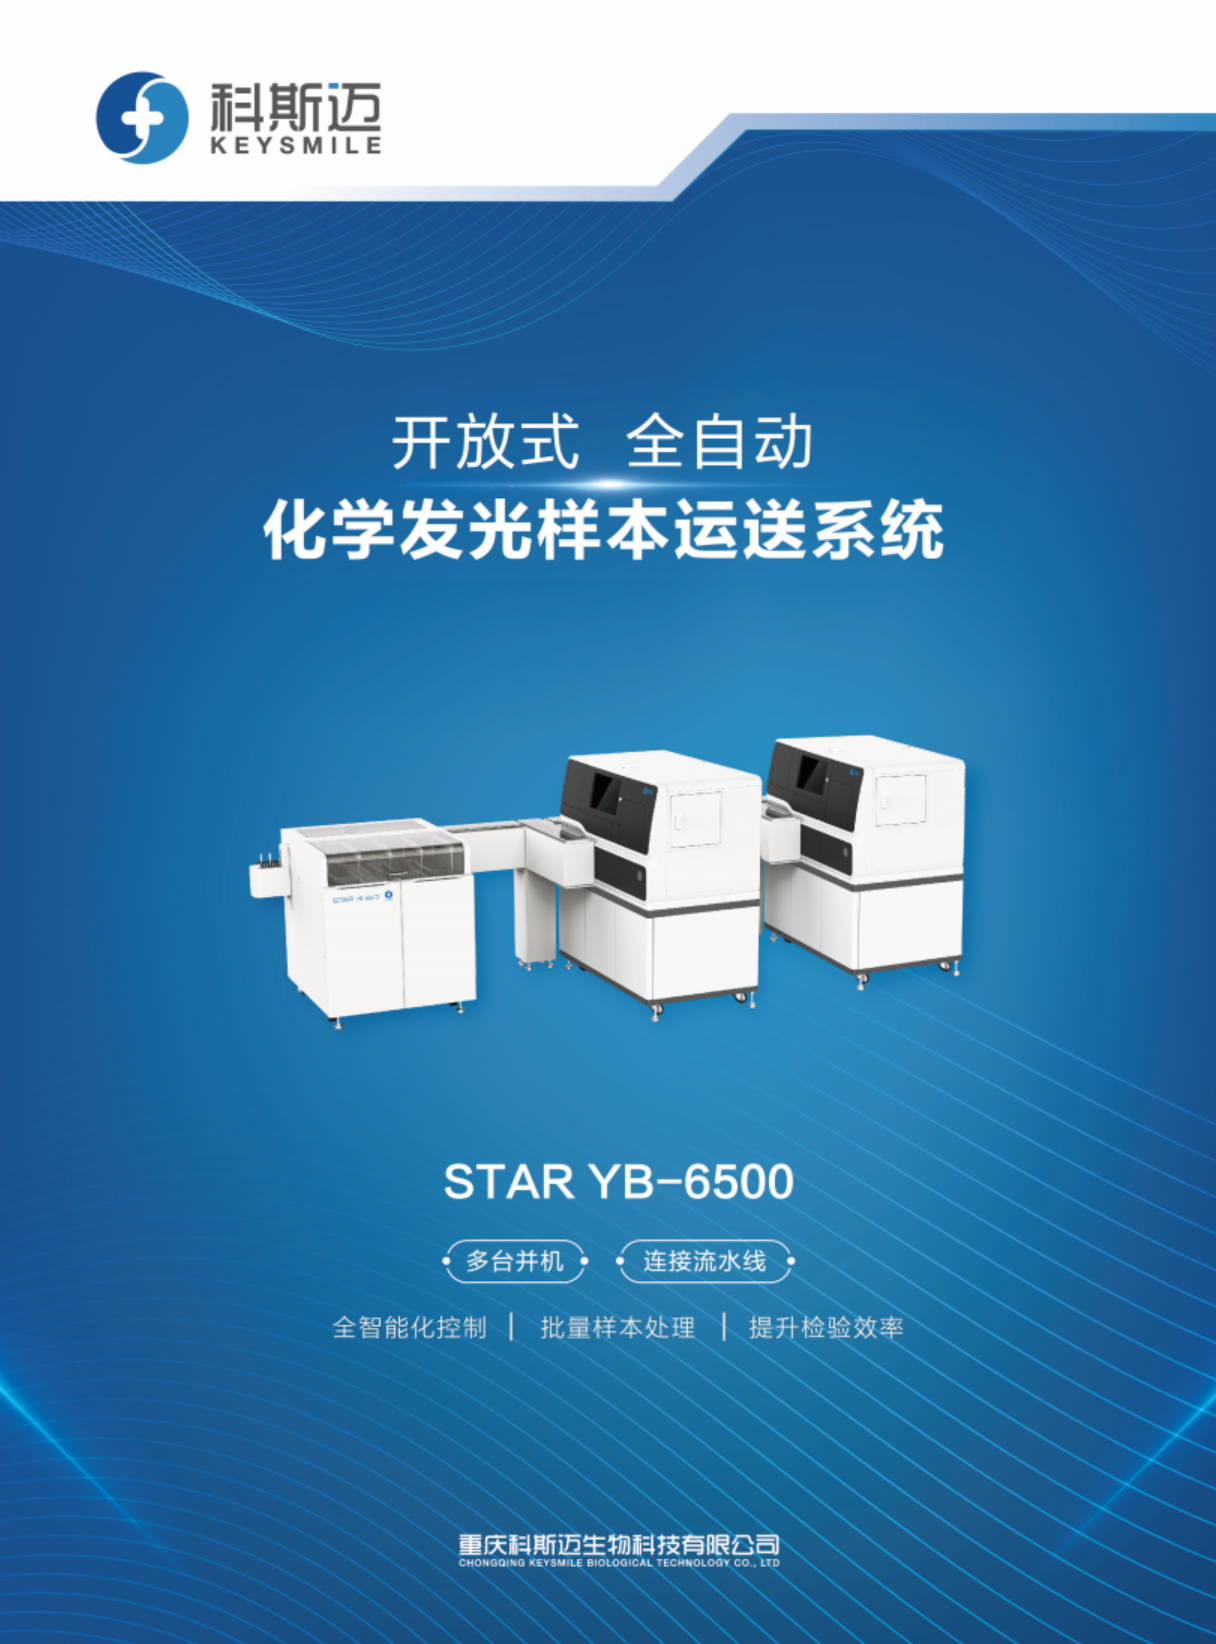 STAR YB-6500